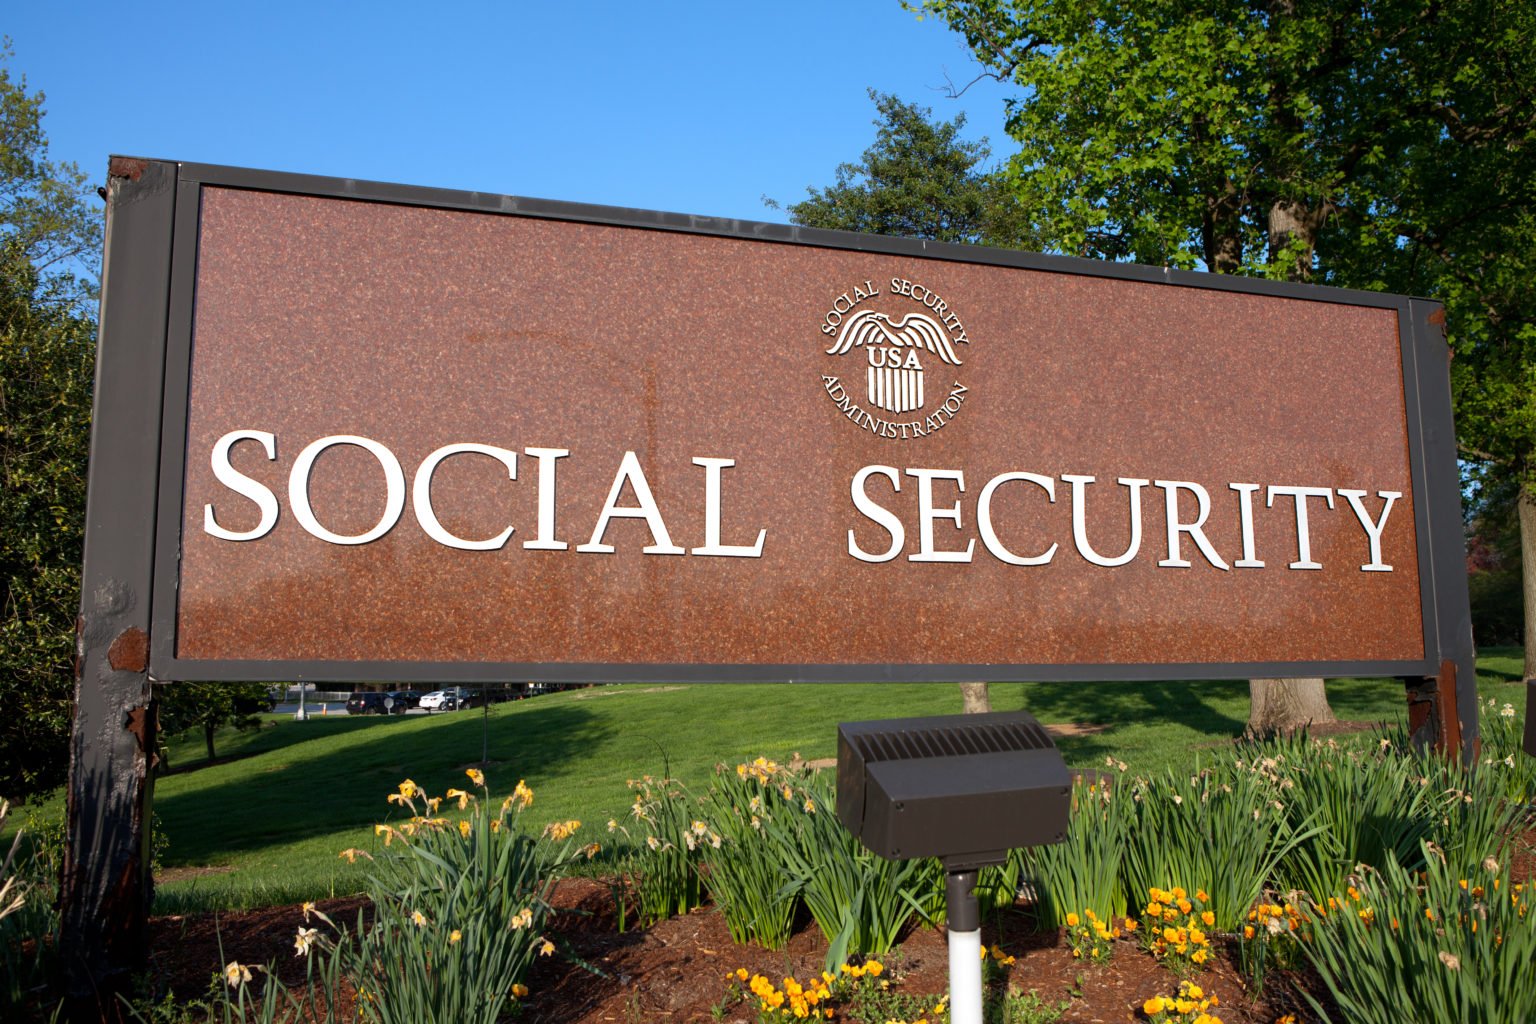 Social Security sign in a garden